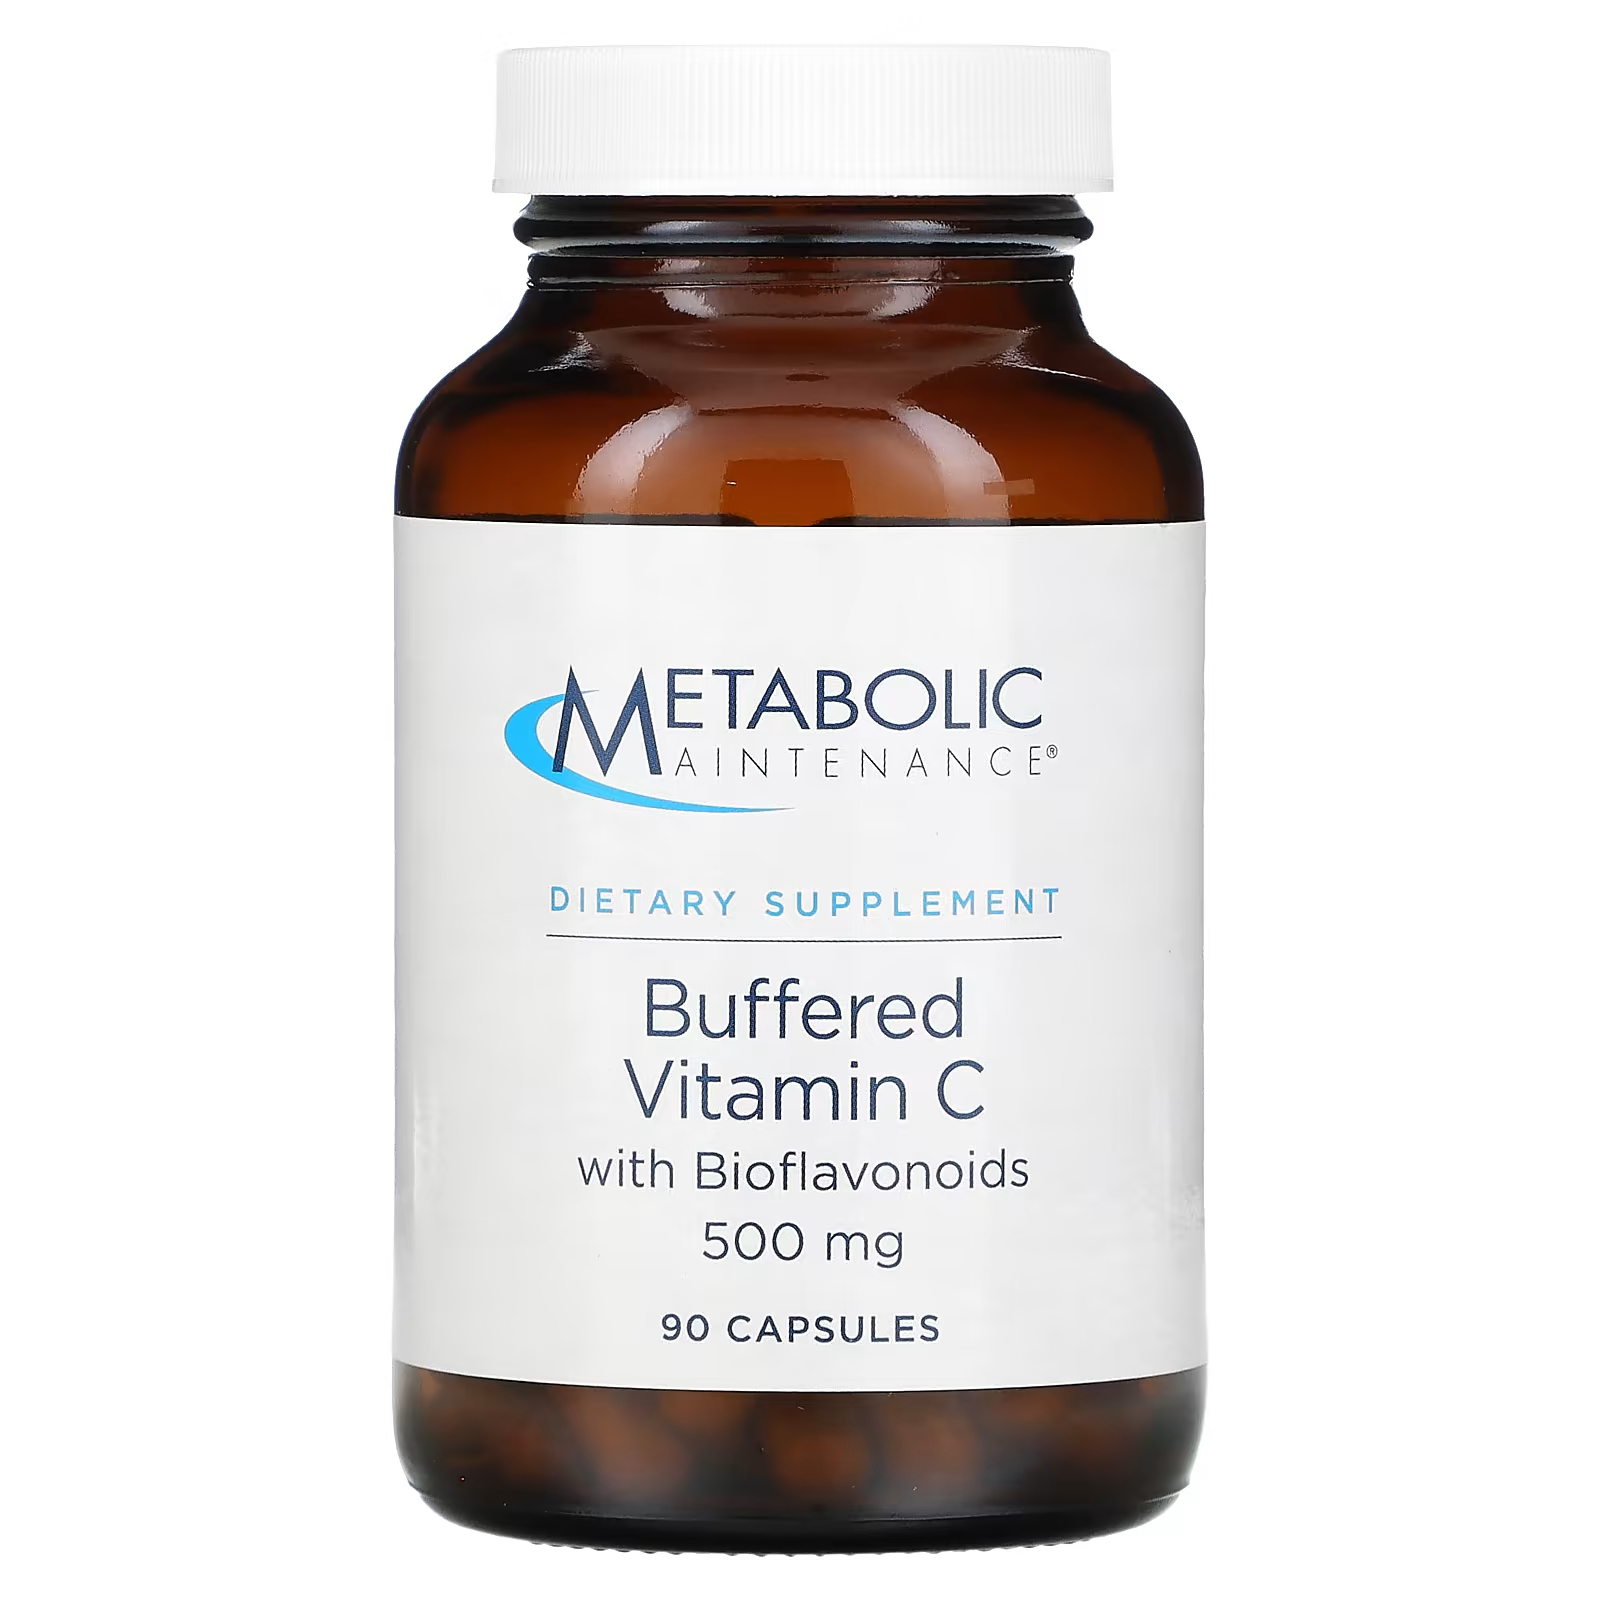 Забуференный витамин С Metabolic Maintenance для поддержания метаболизма с биофлавоноидами, 90 капсул